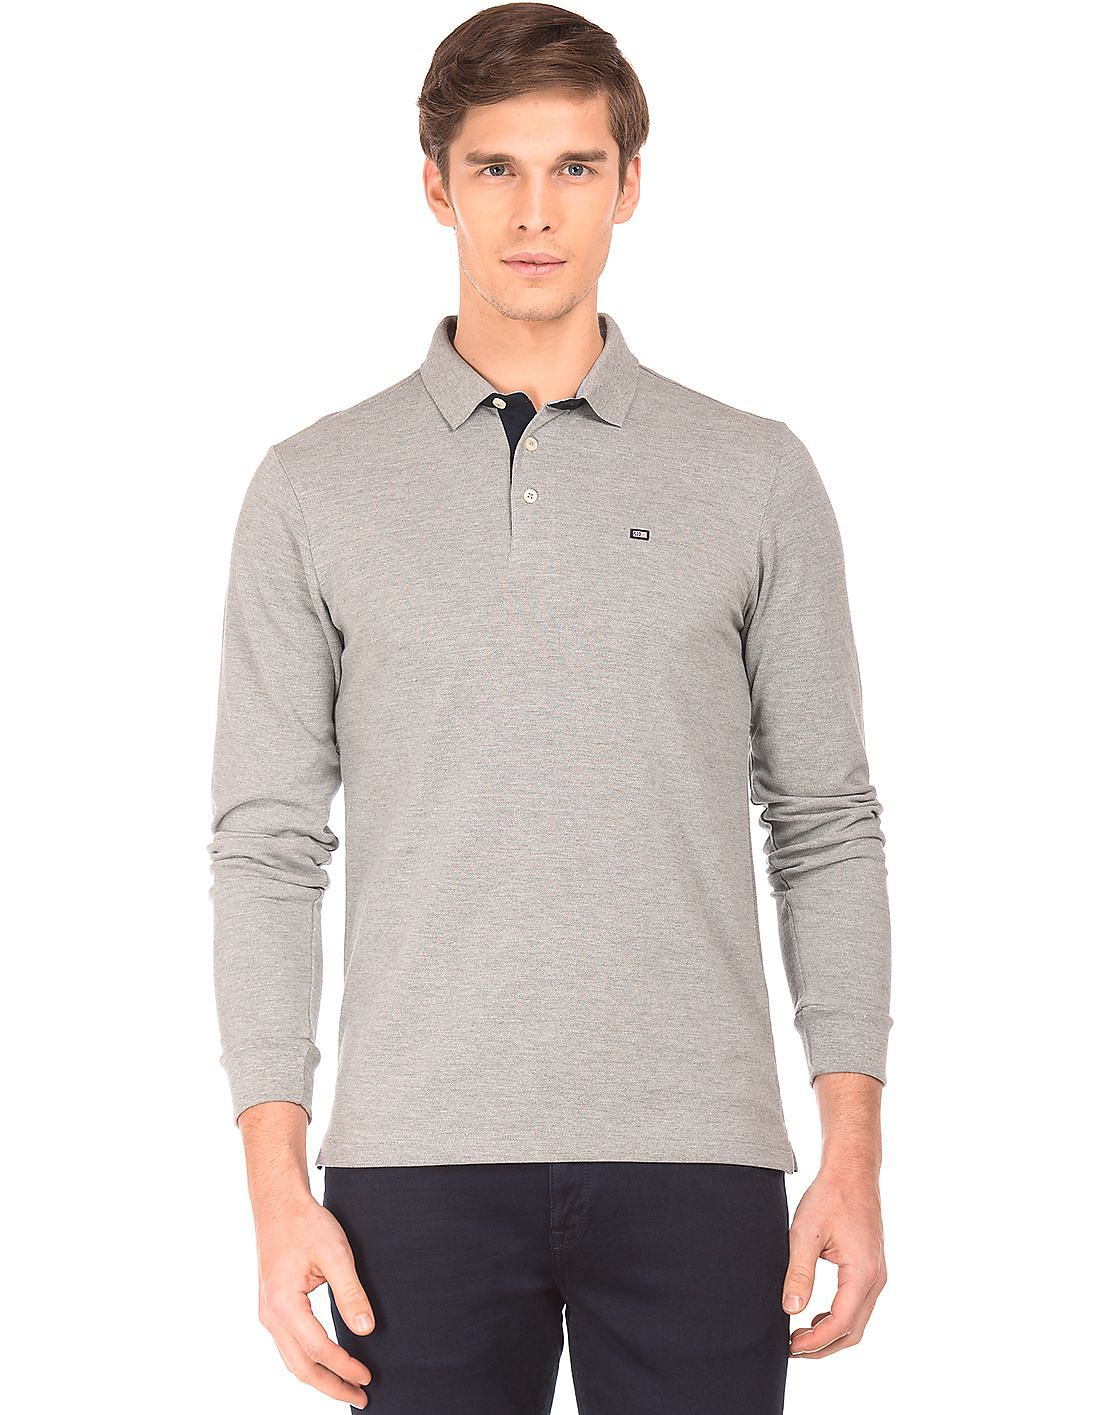 Buy Arrow Sports Regular Fit Long Sleeve Polo Shirt - NNNOW.com